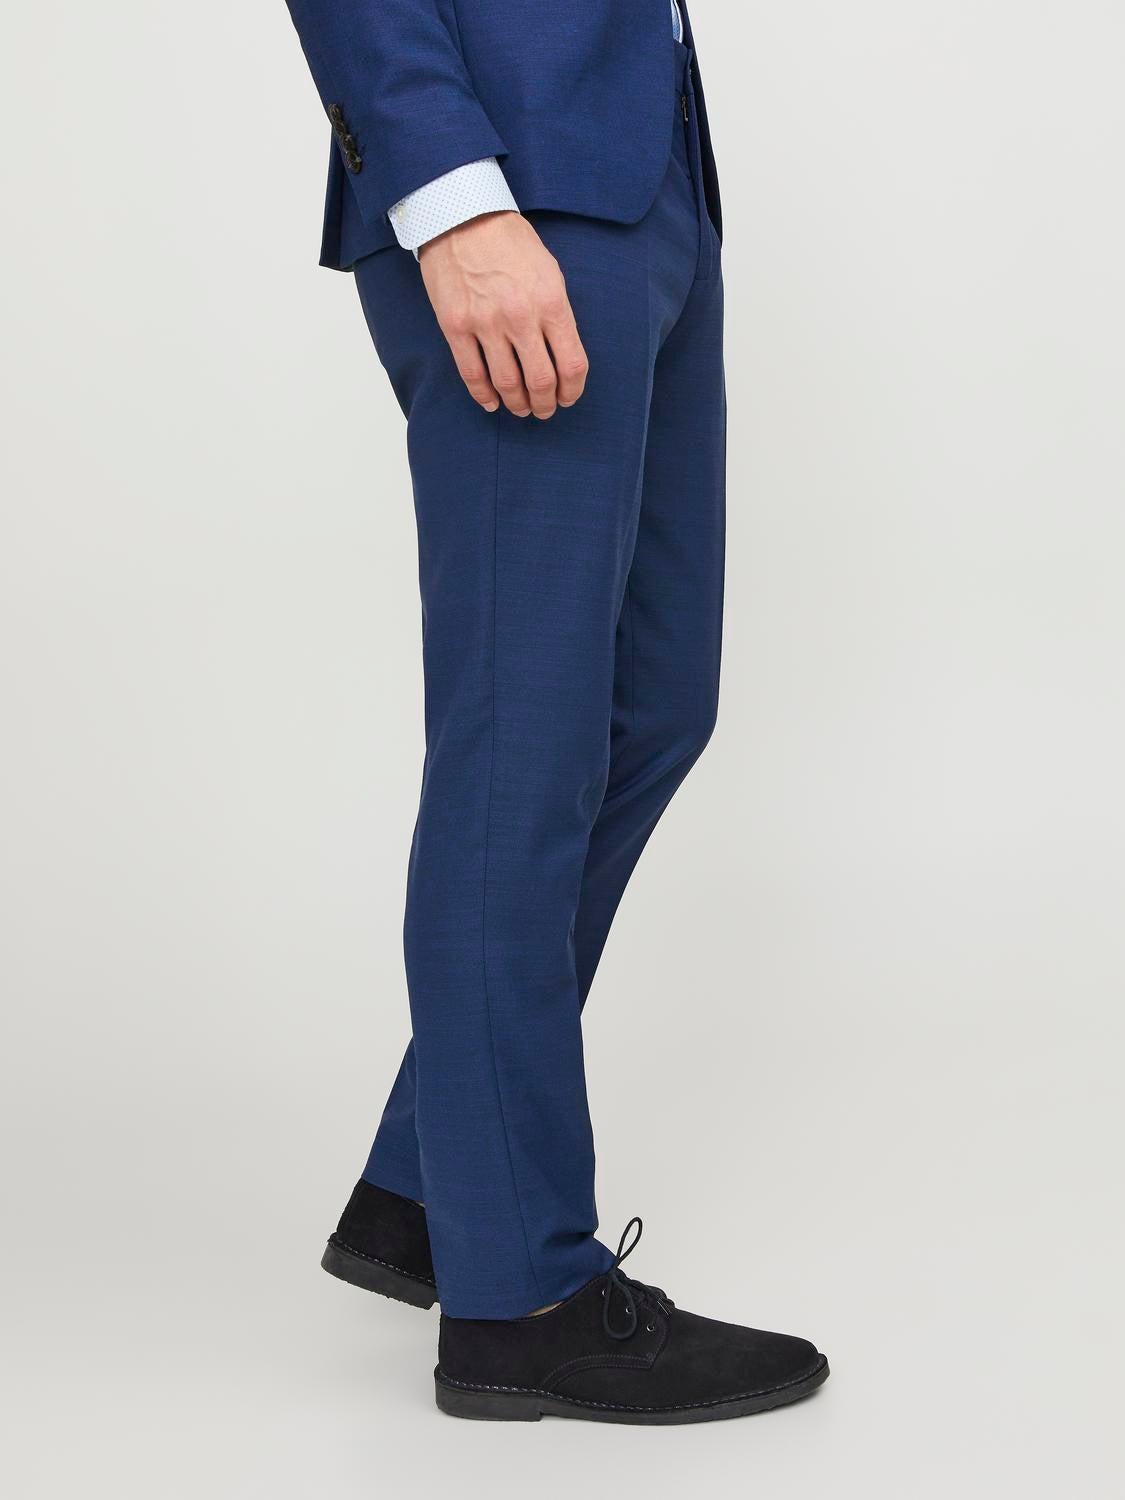 Jack & Jones Premium super slim fit super stretch suit pants in navy | ASOS